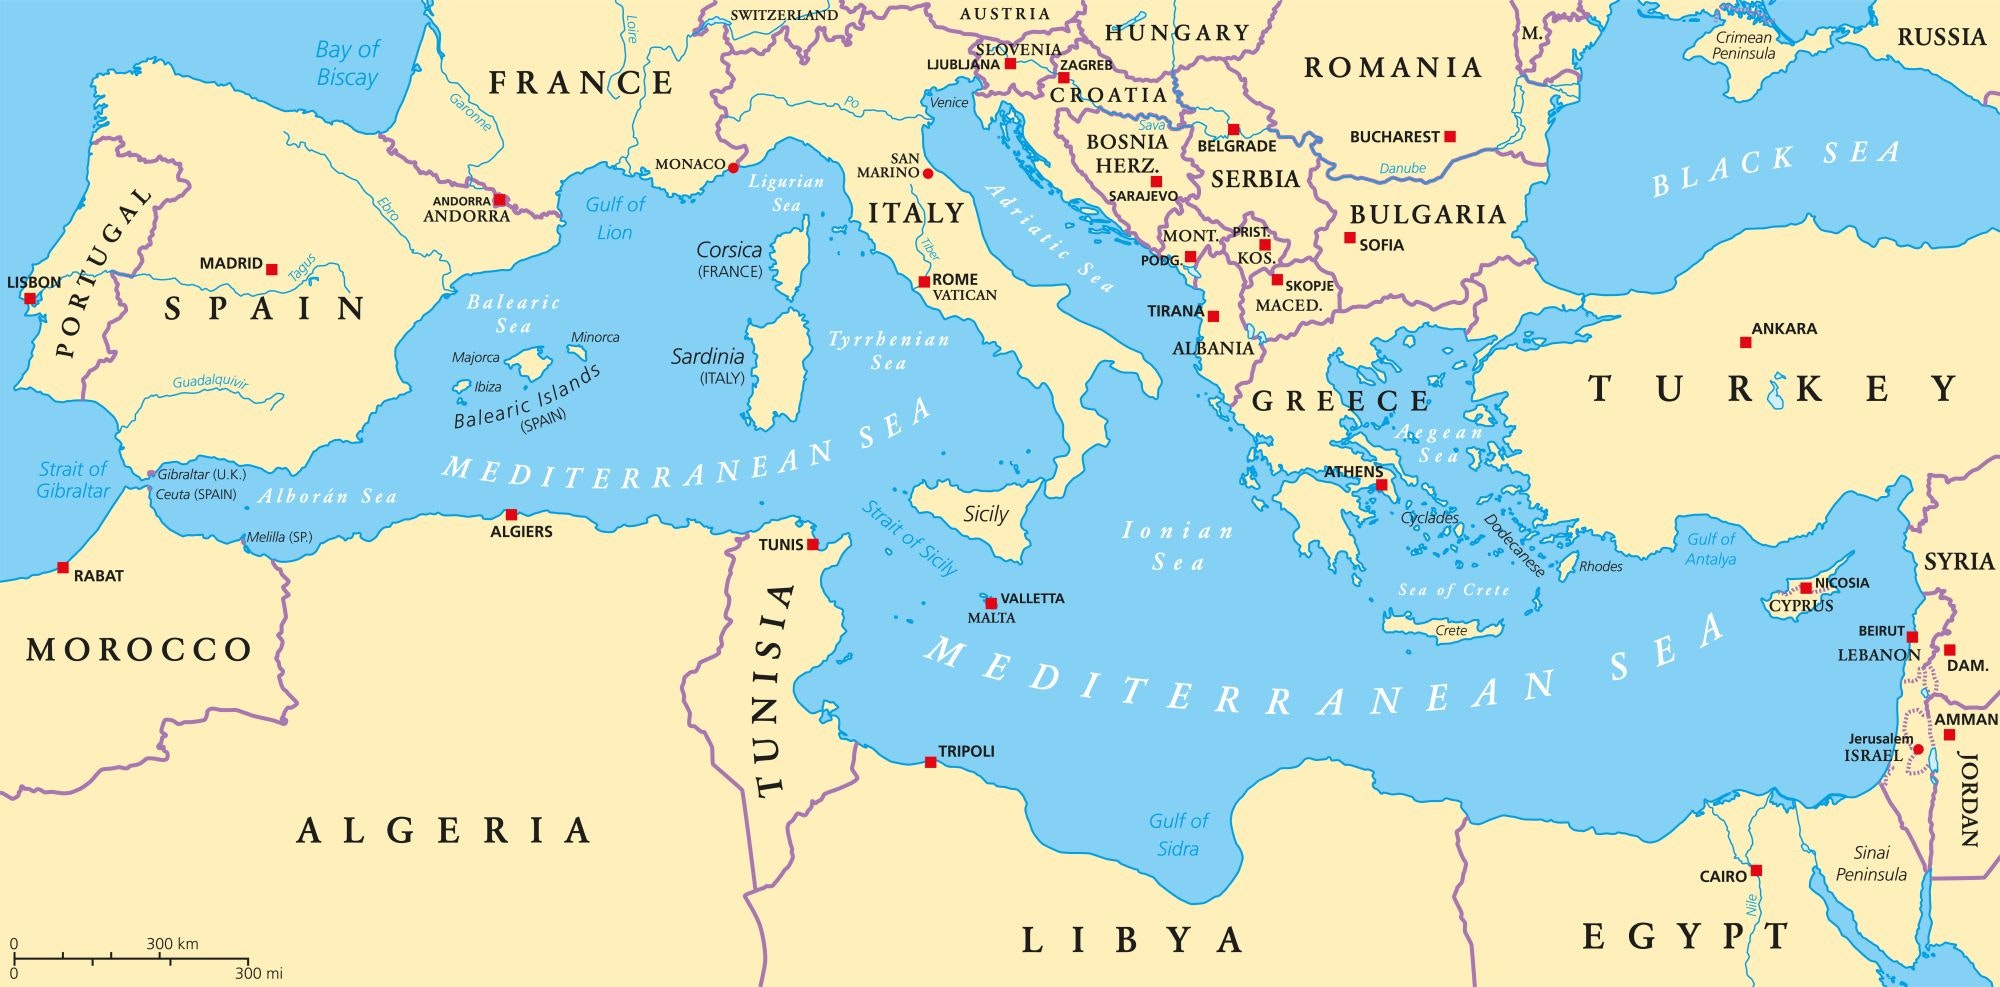 Karte des Mittelmeers und der umliegenden Gebiete